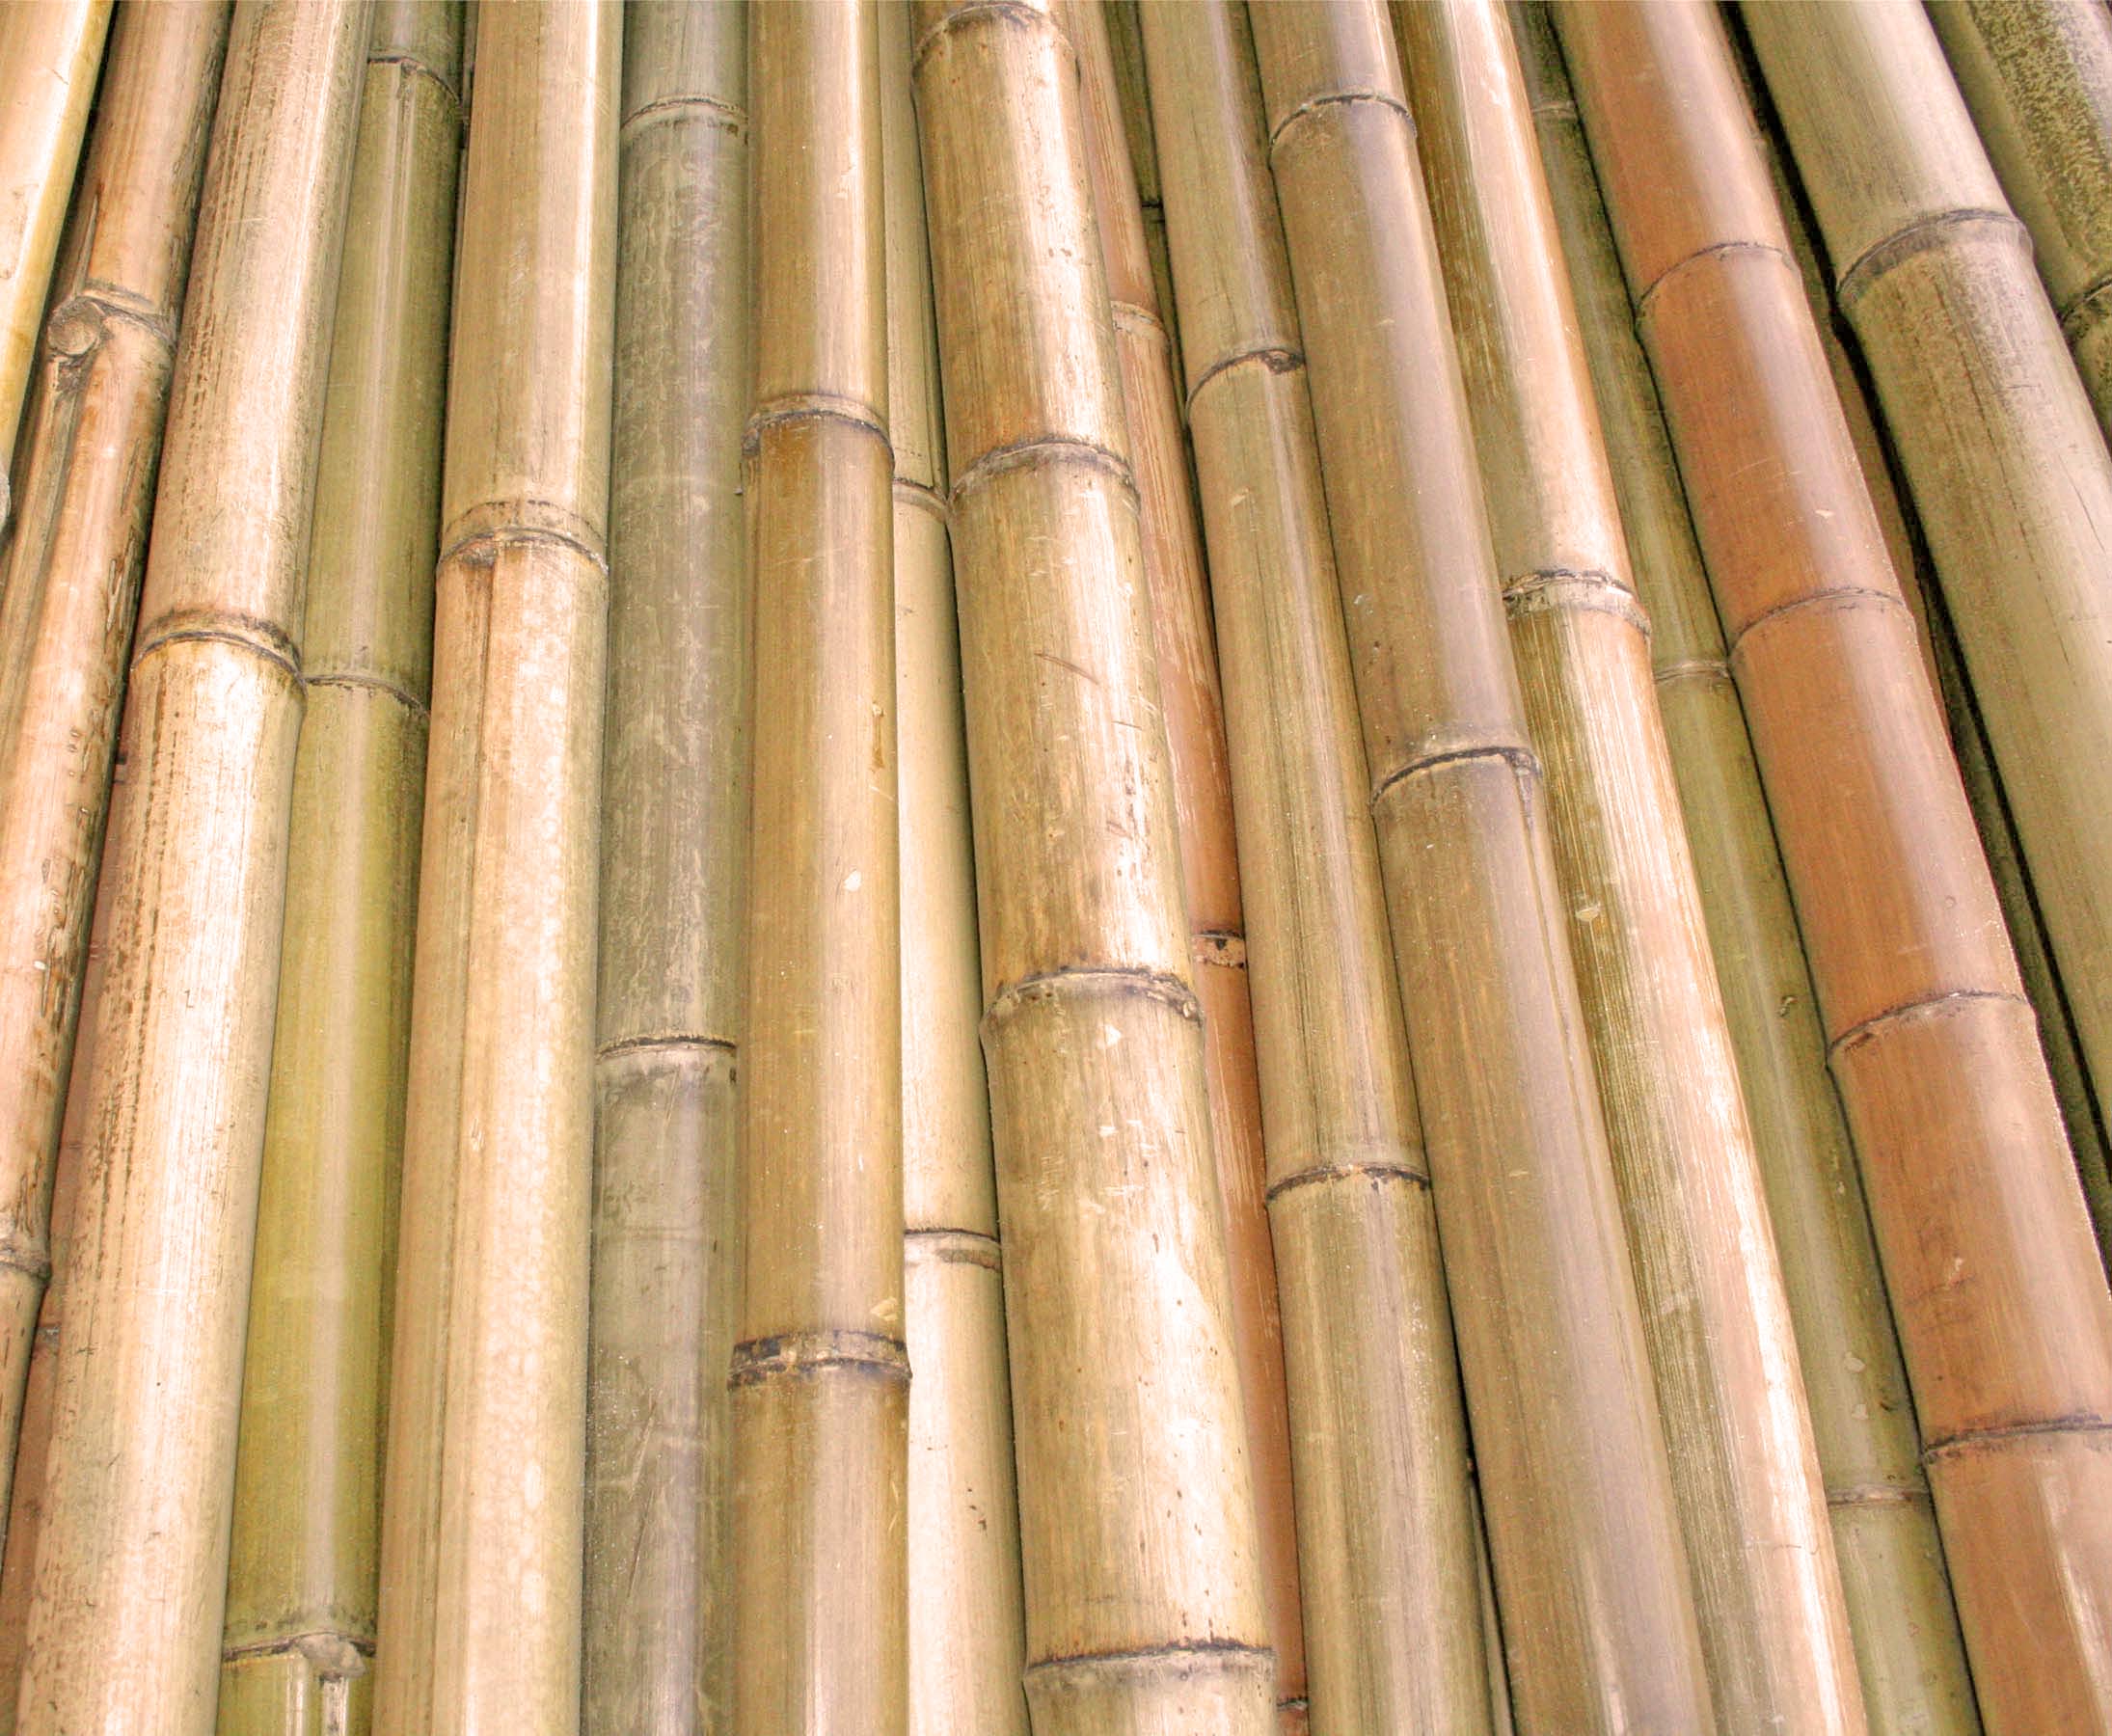 6 bis 7cm Bambus Rohr hitzebehandelt Bambusrohre Moso 200cm gelbbraun Durch 